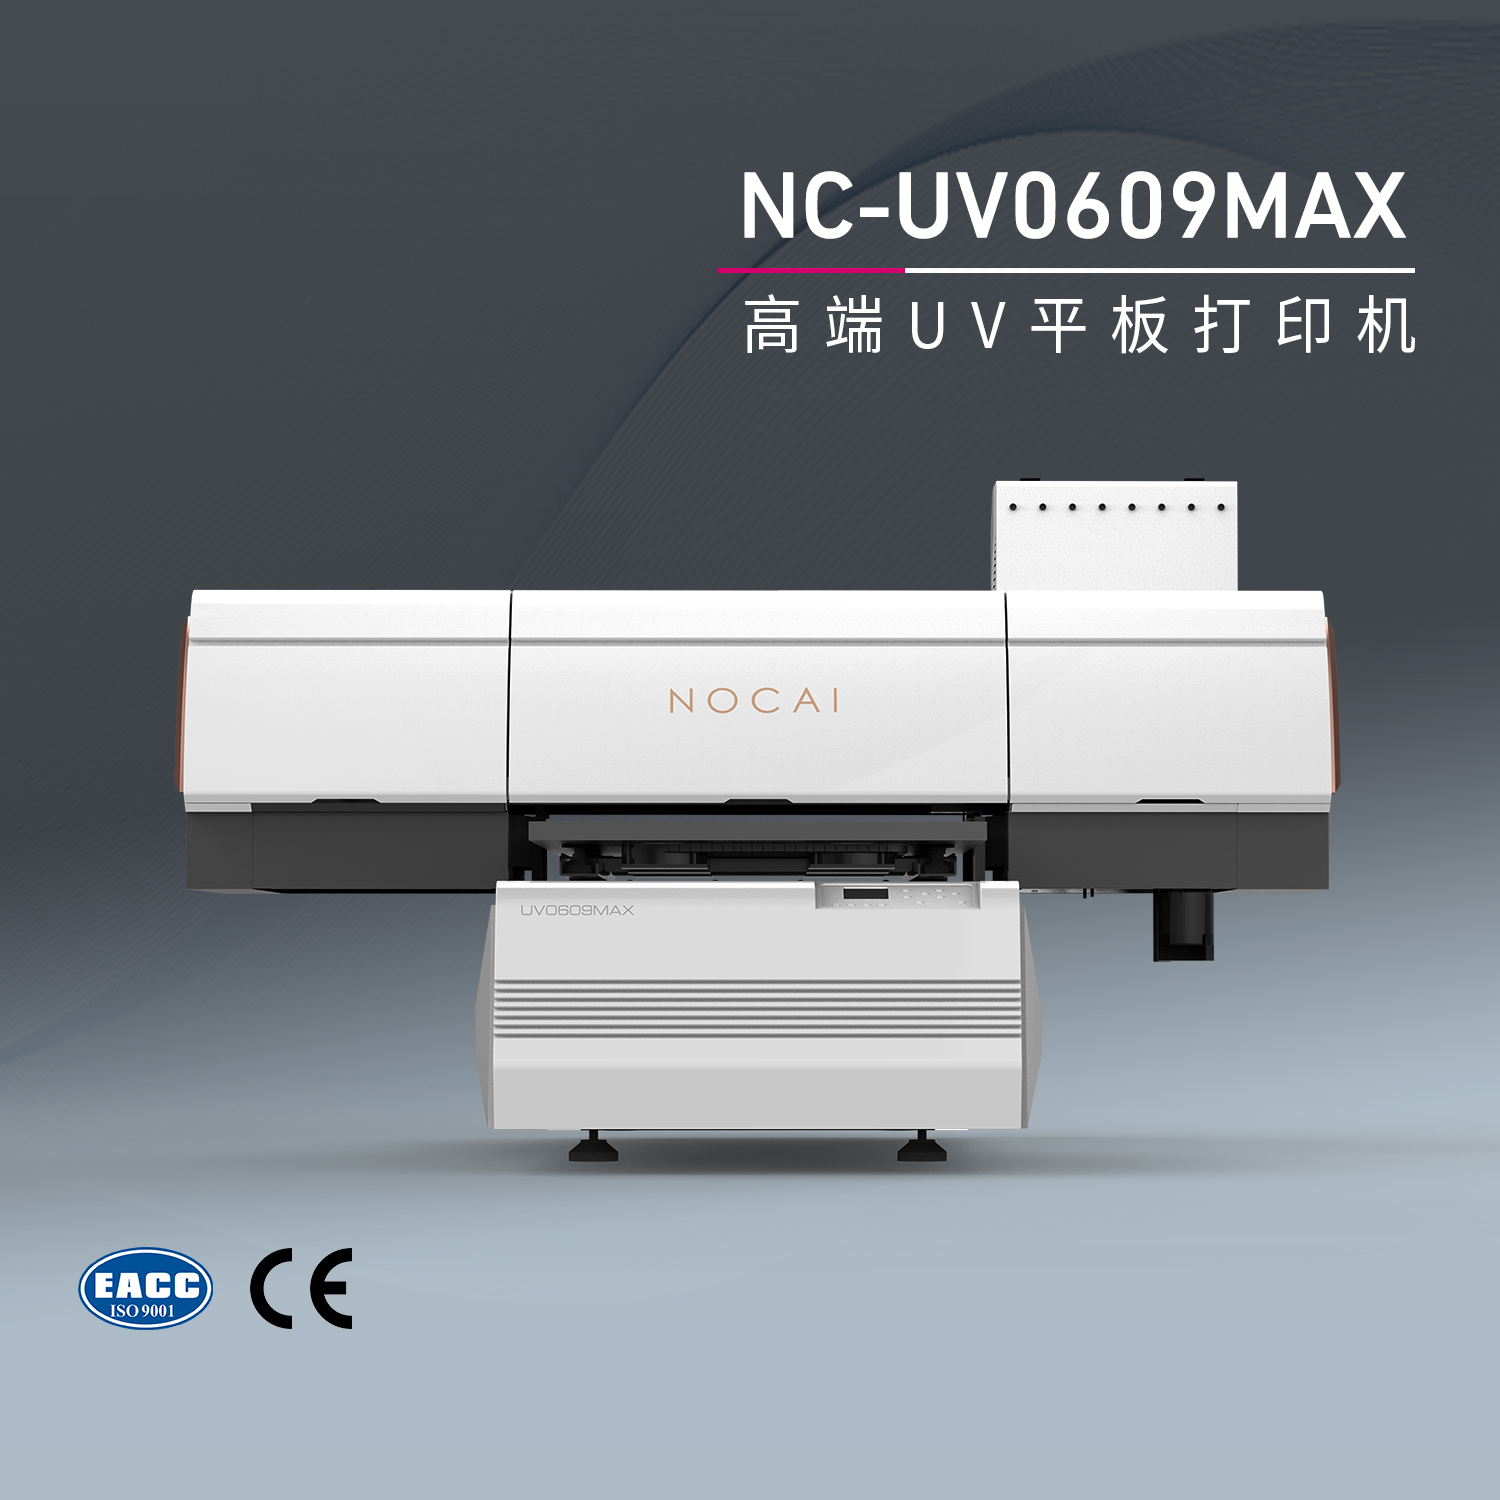 UV打印机打印头堵了如何处理?